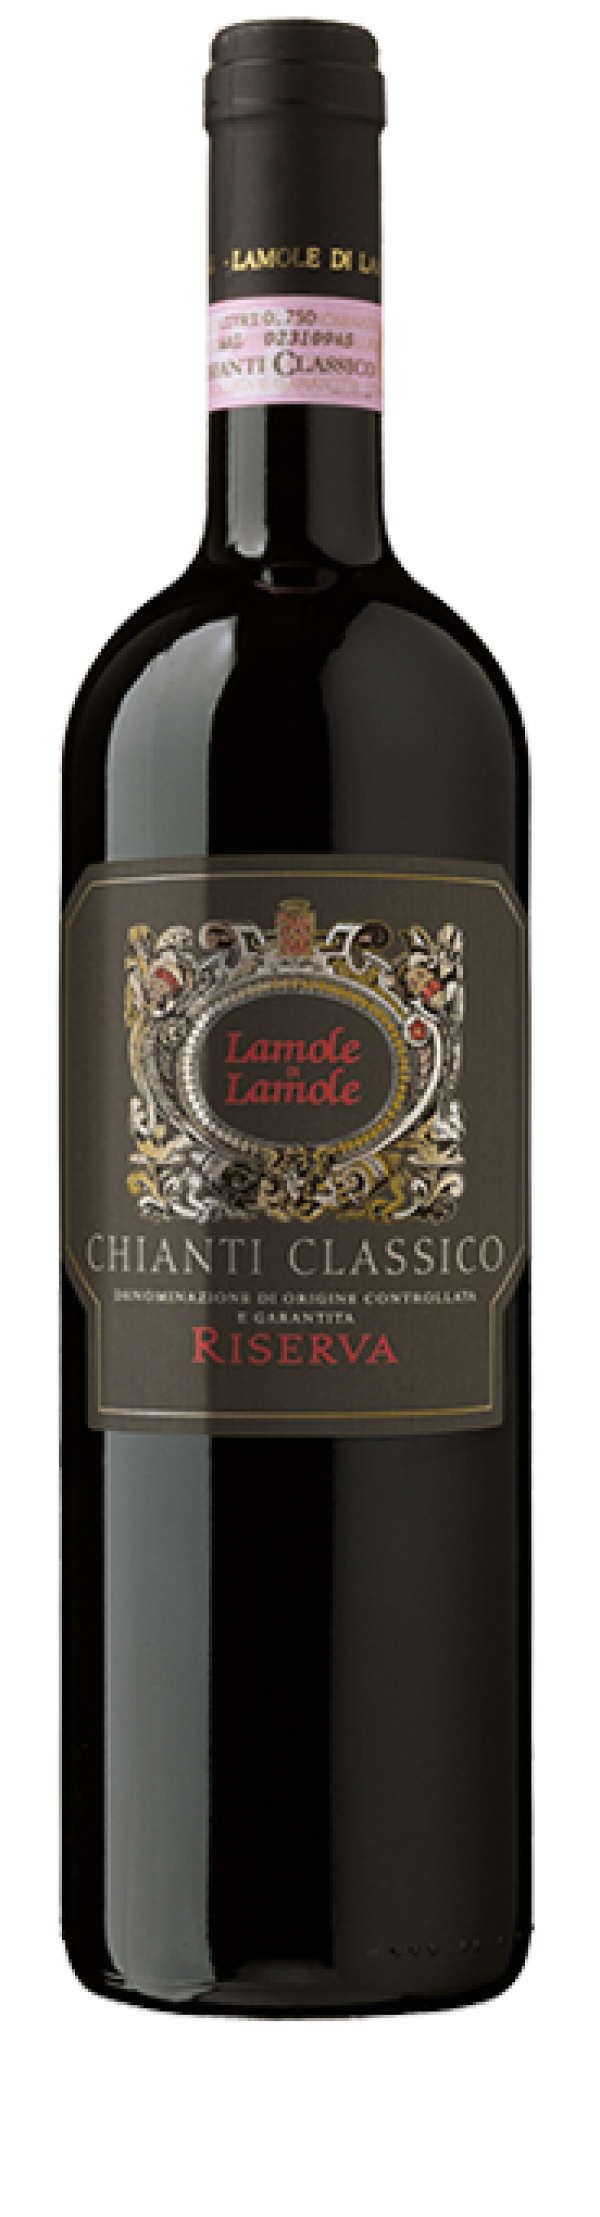 2015 Lamole Chianti Classico Gran Selezione Riserva - click image for full description